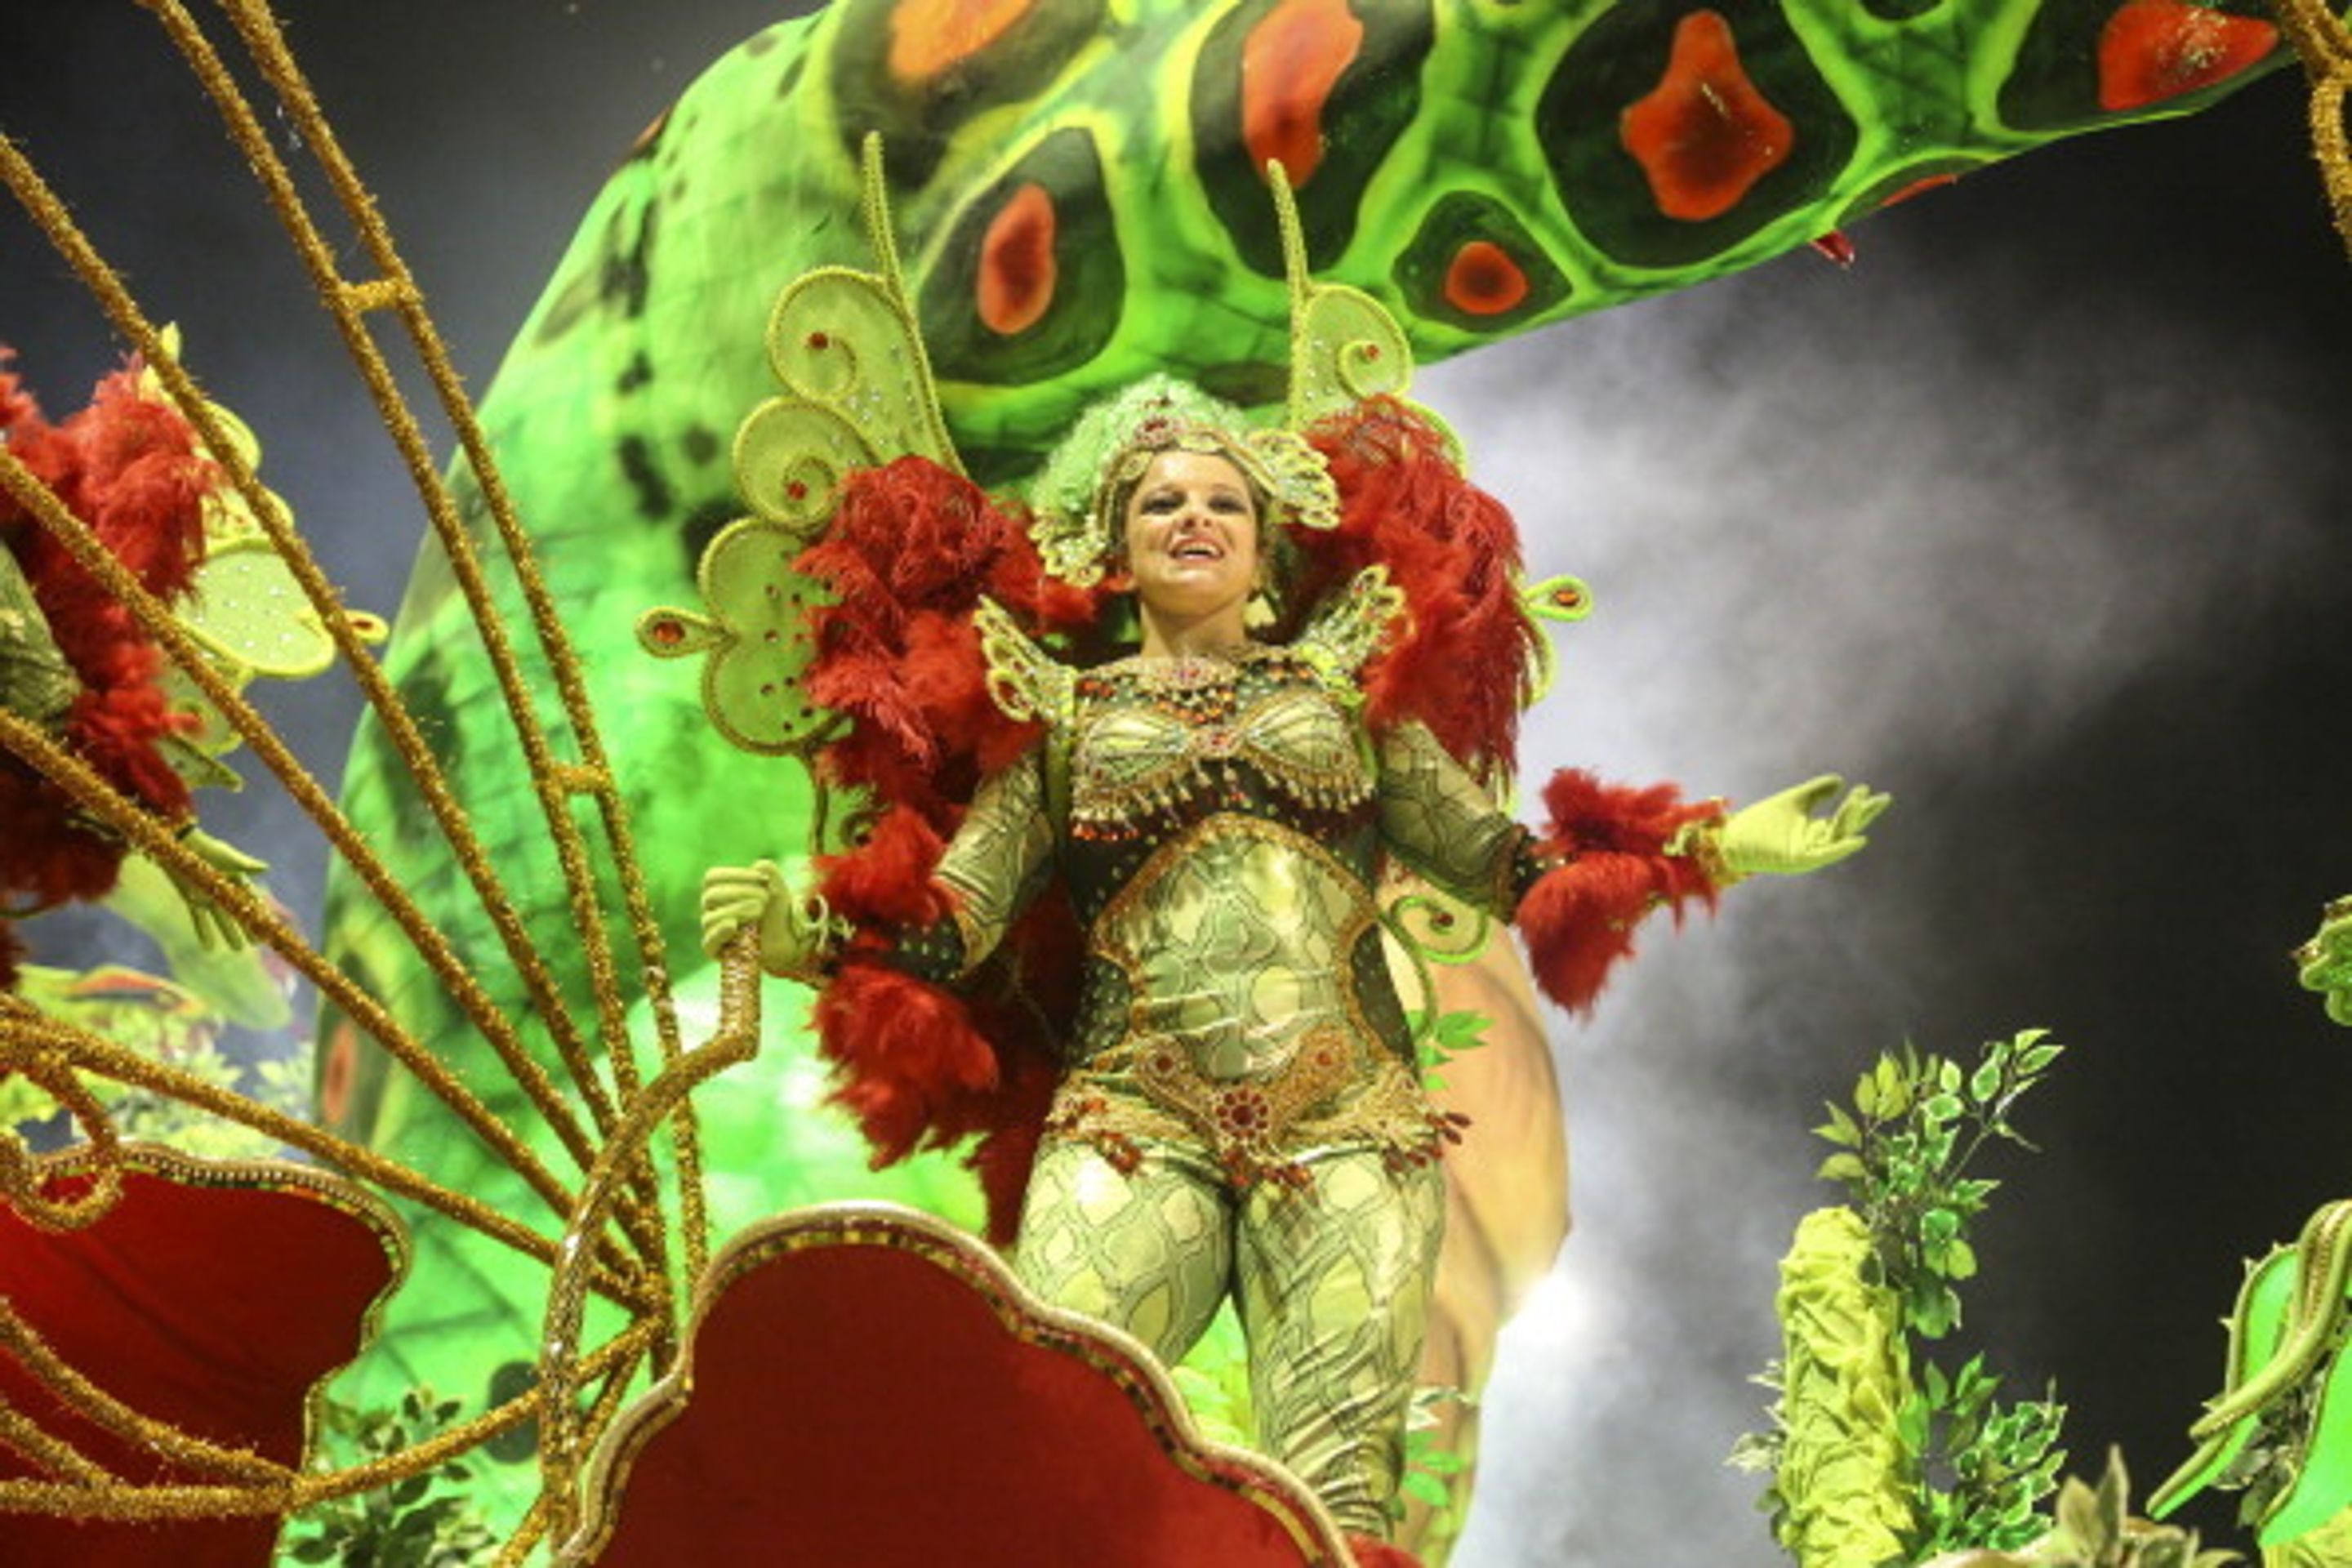 Karneval v Riu de Janeru - 1 - Brazílie žije všemi barvami. Karneval začal! (19/19)